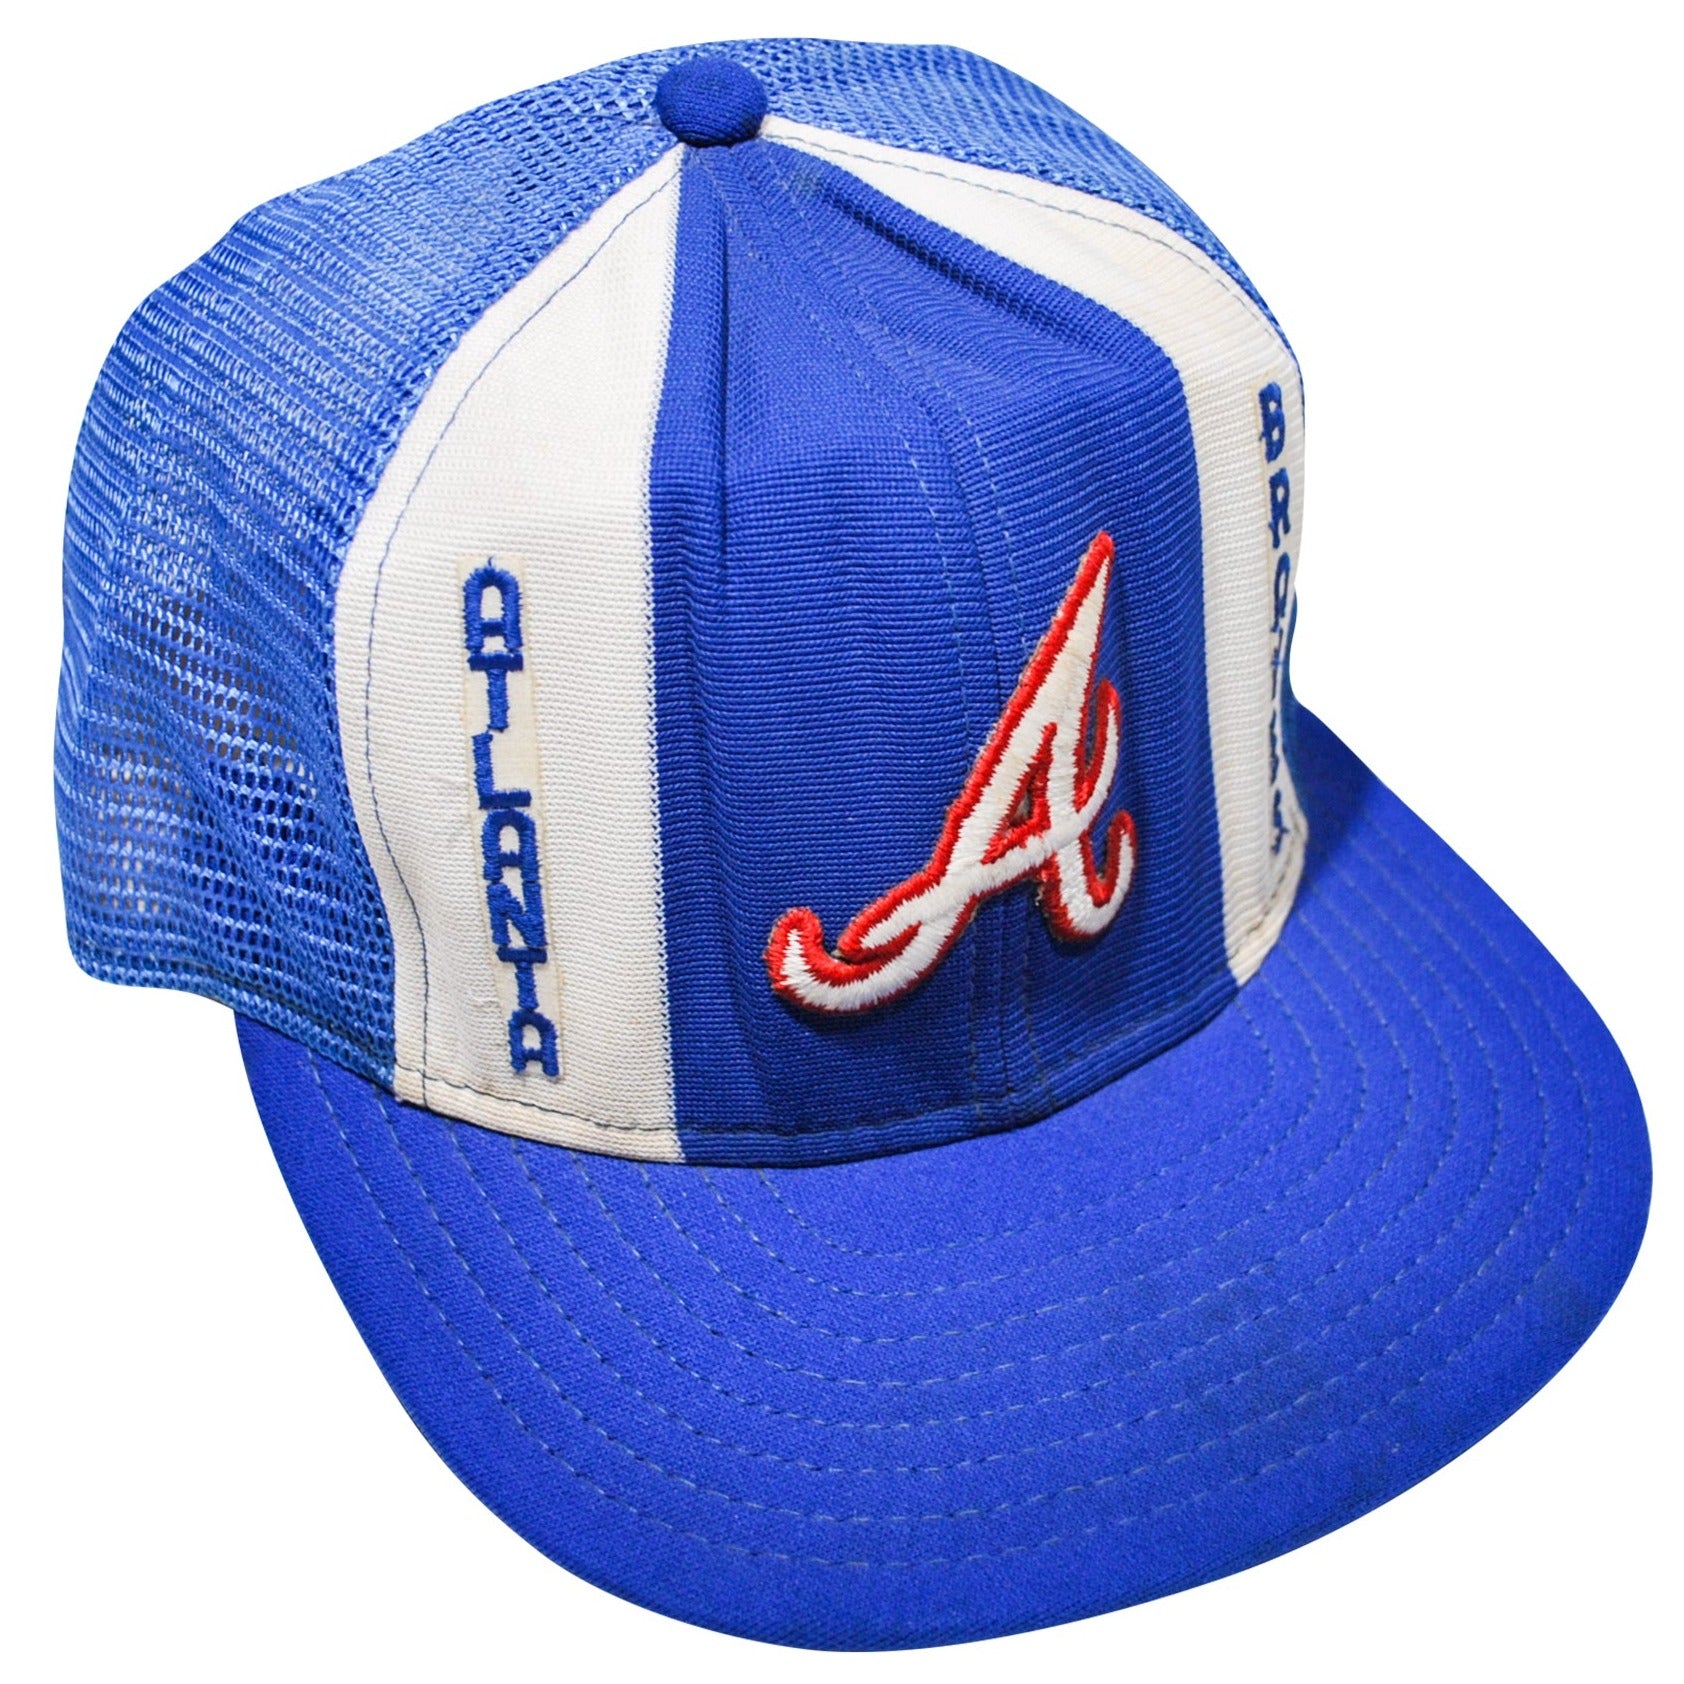 MLB Atlanta Braves Snapback Flat Bill Old School Vintage Dead Stock Hat Cap  Blue